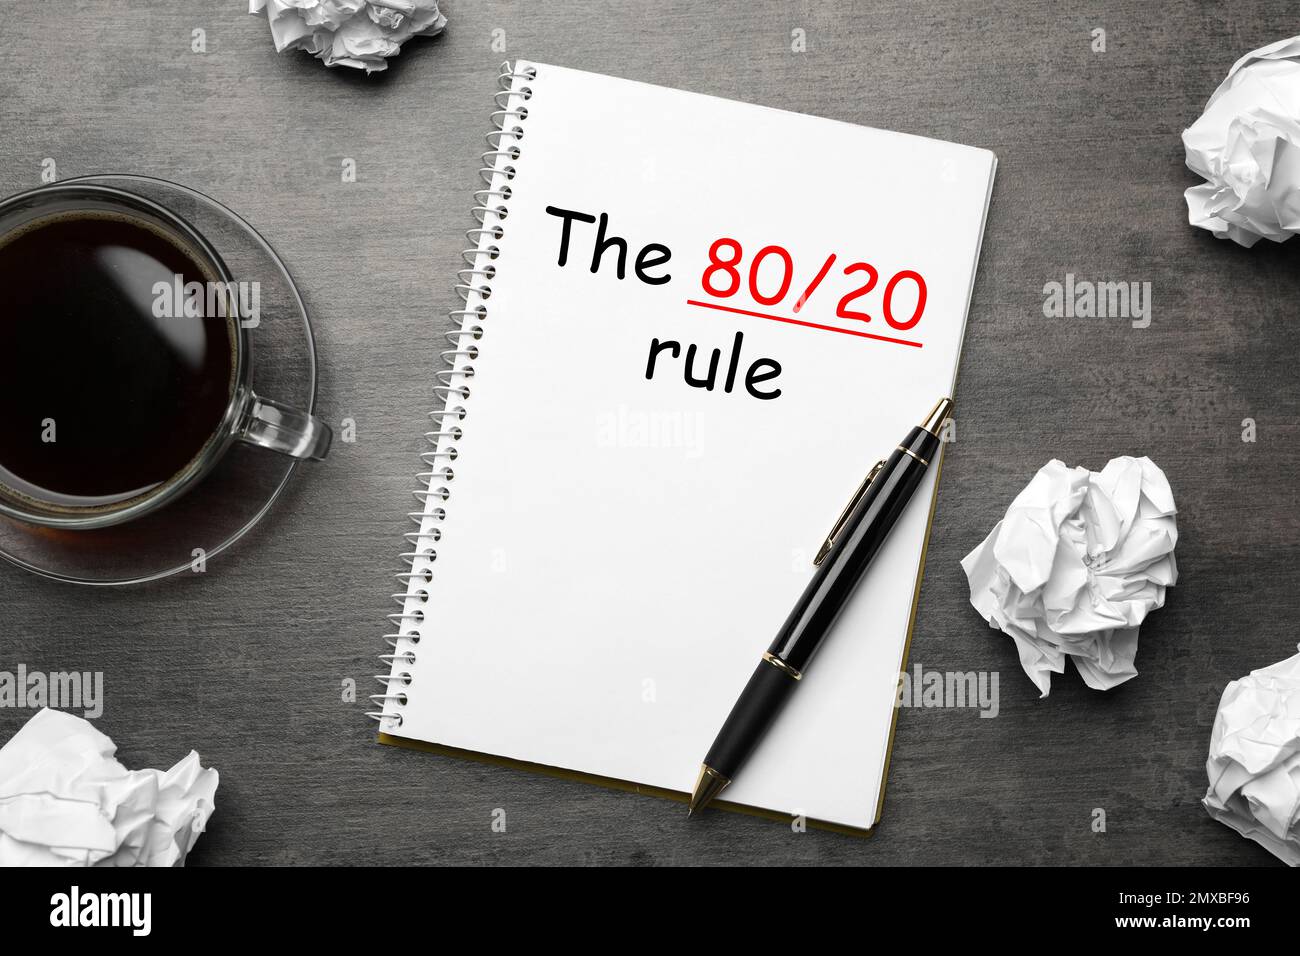 Concept de principe de Pareto. Bloc-notes avec représentation de 80/20 règles sur fond gris, plat Banque D'Images